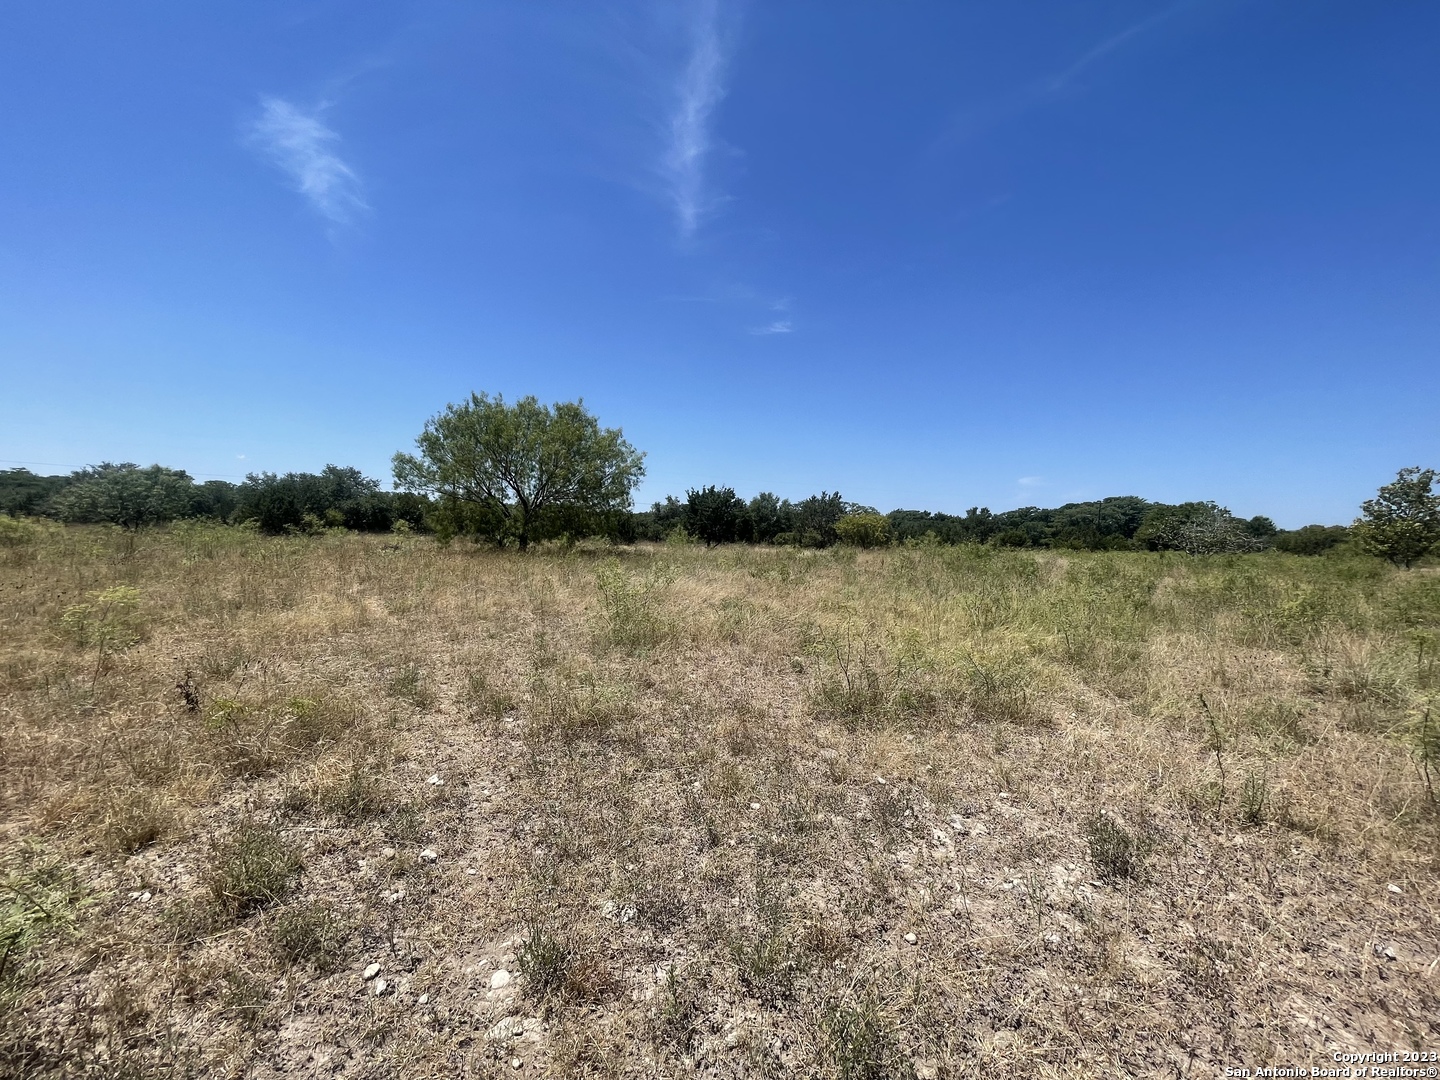 View Bandera, TX 78003 land